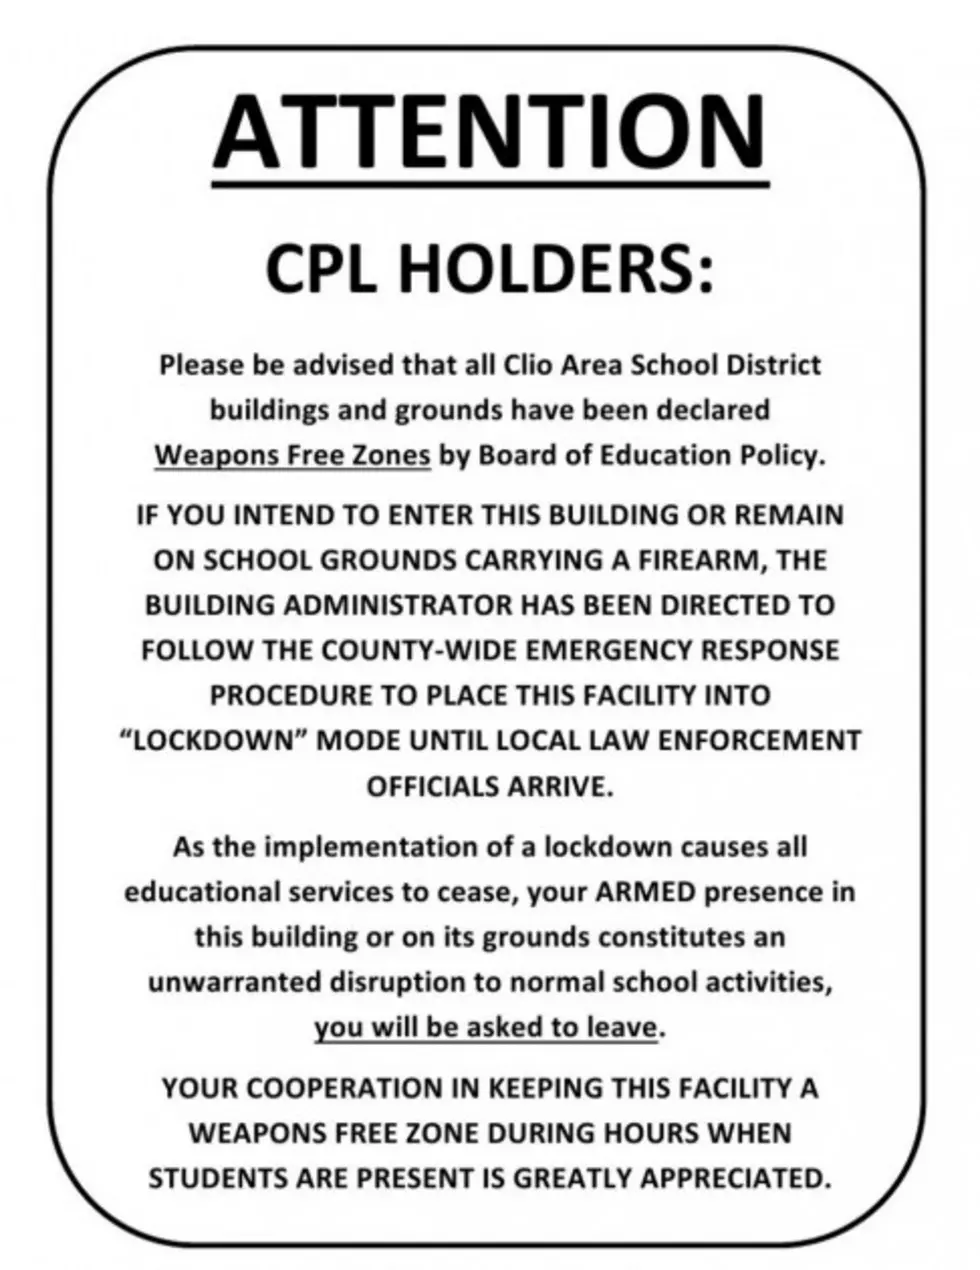 Clio Parent Files Lawsuit Against School District for Open-Carry